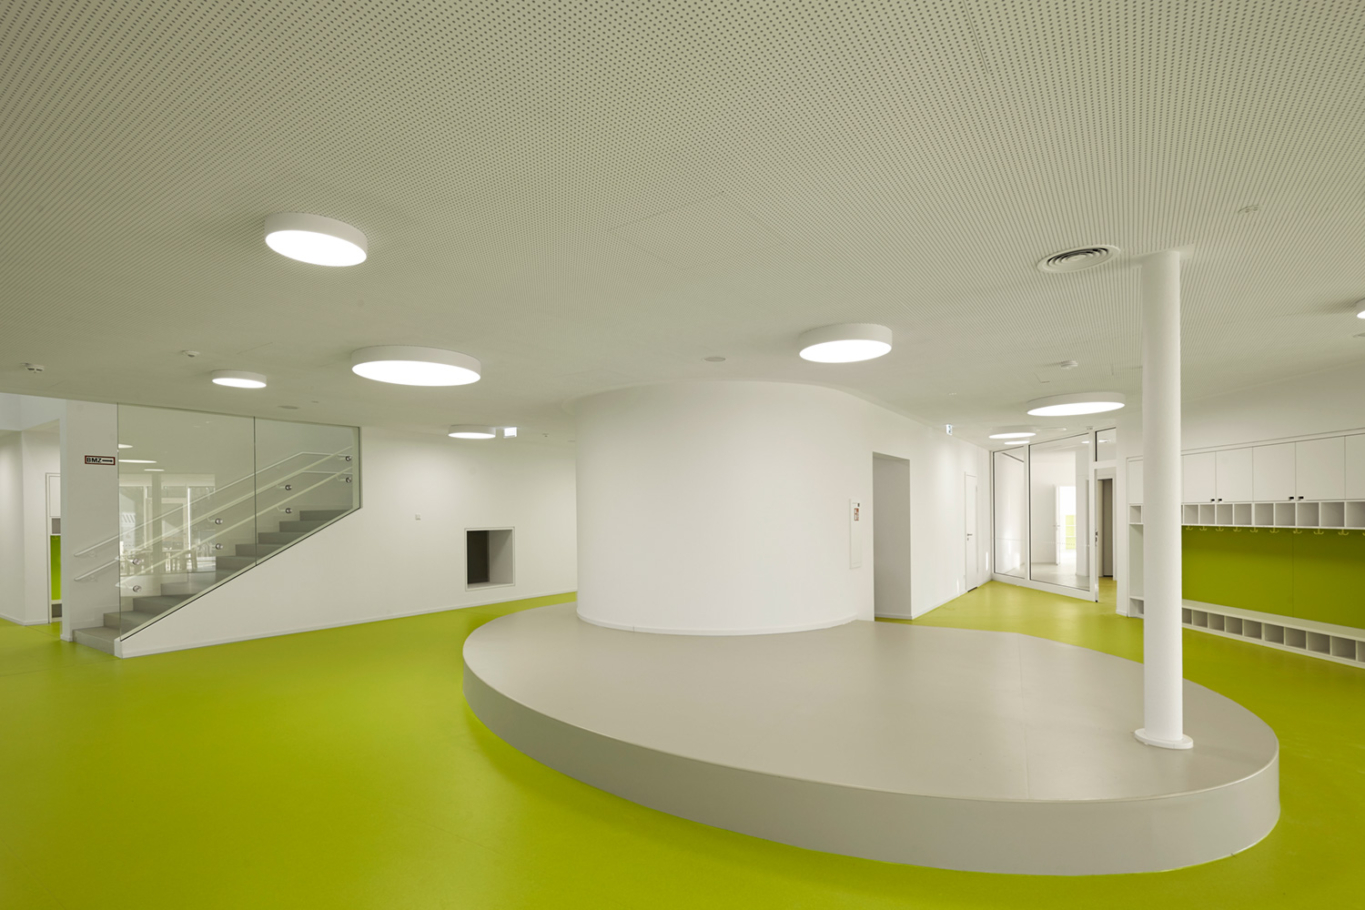 Architekturfotografie Lioba Schneider: Neubau des Kita der Bayer AG in Leverkusen in Holzbauweise. Der sehr grüne Bodenbelag kontrastiert sehr zu den weisen Wänden.